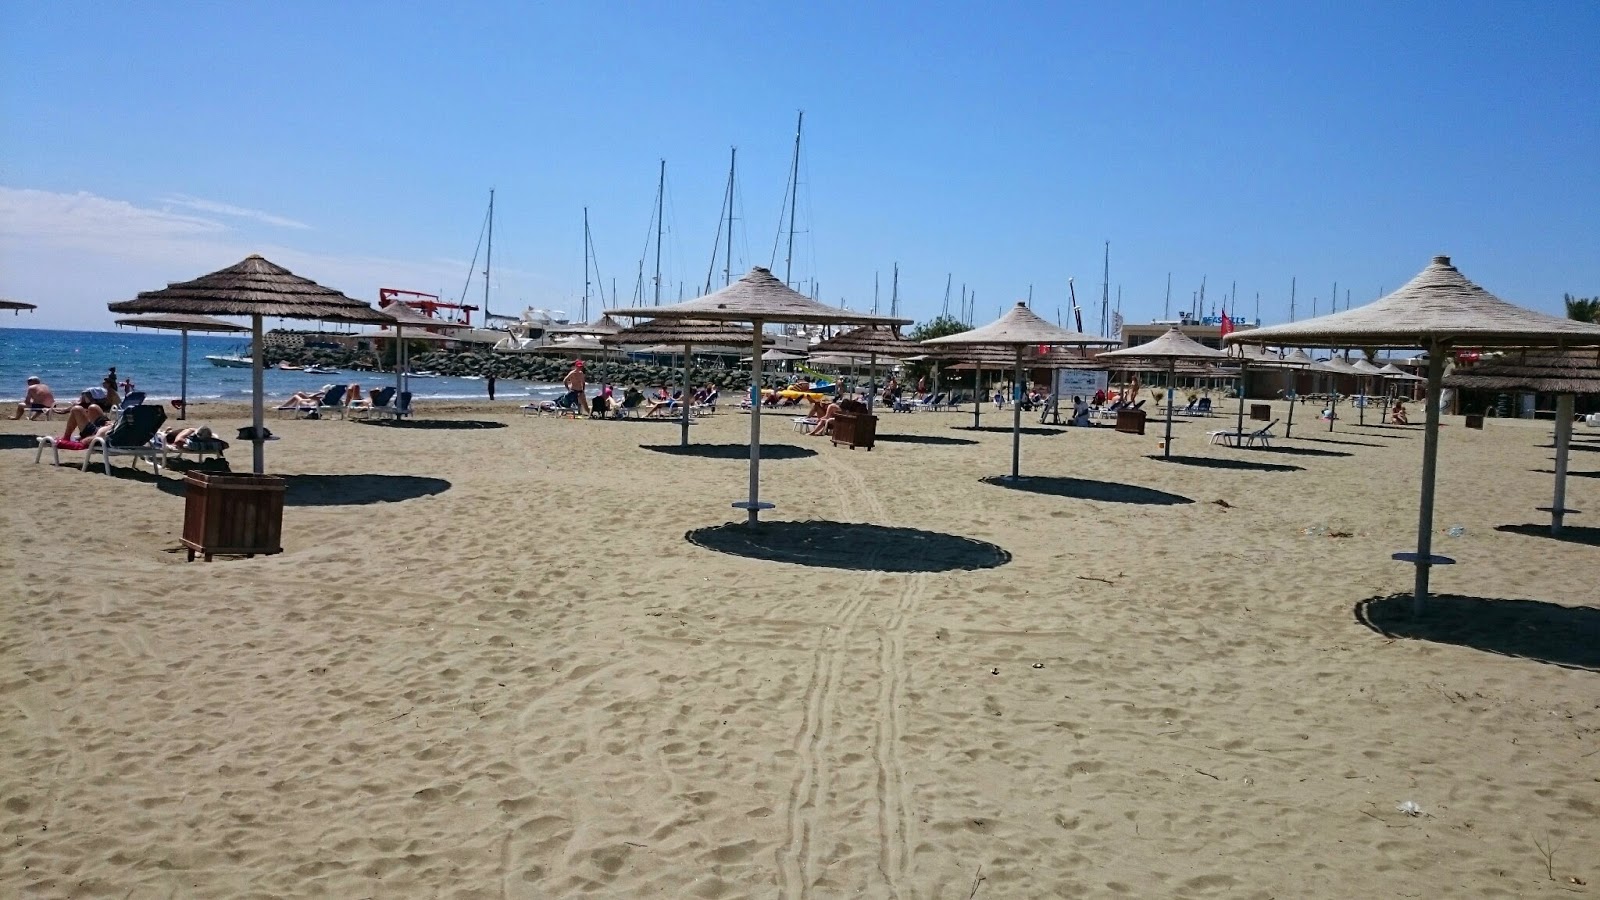 Photo de Panagies beach - endroit populaire parmi les connaisseurs de la détente